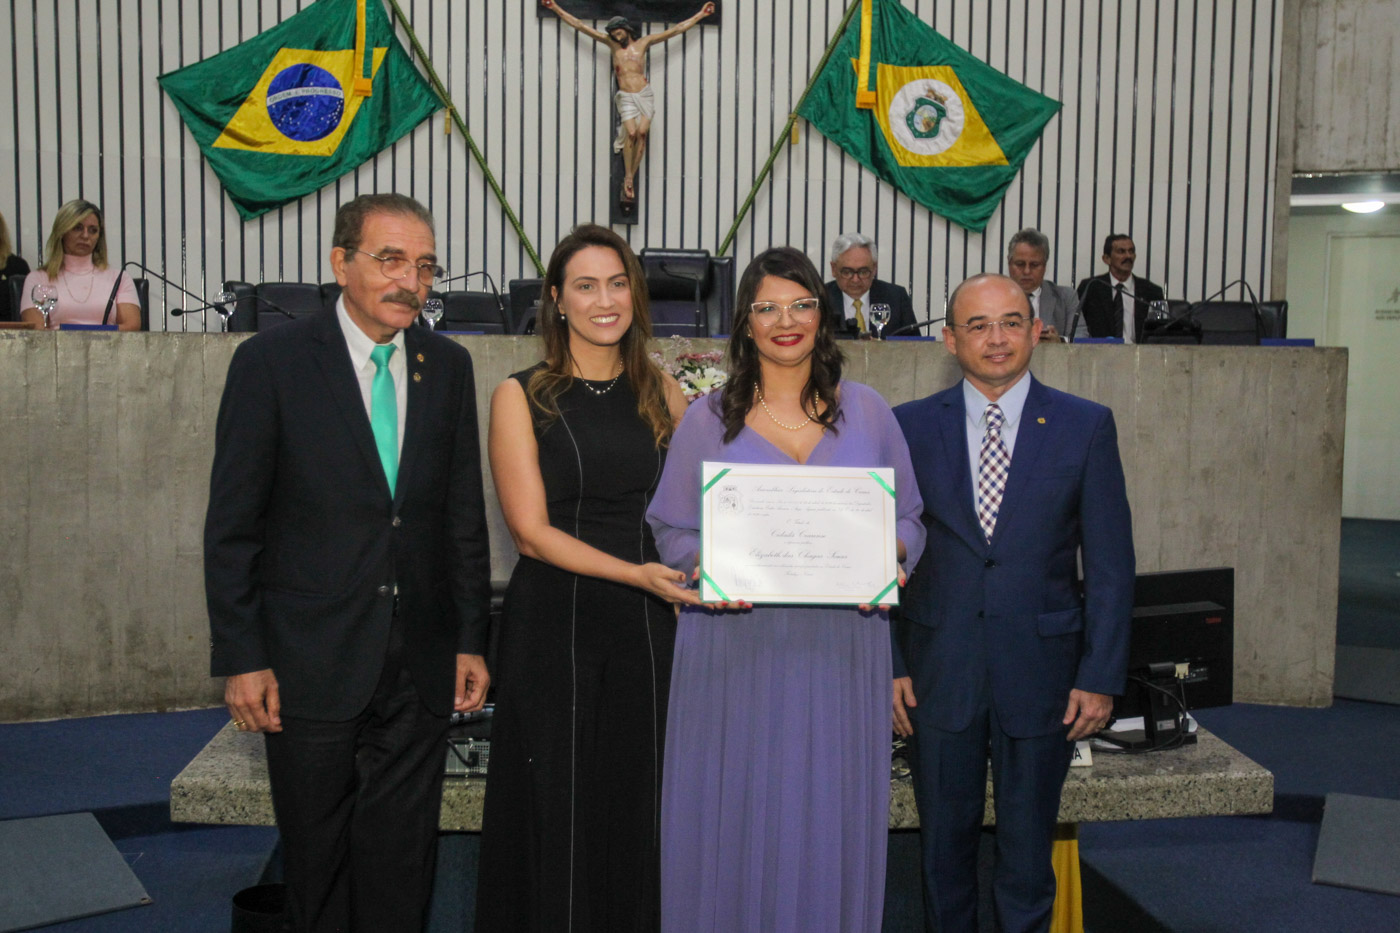 Defensora pública geral, Elizabeth Chagas, recebe o título de cidadã cearense